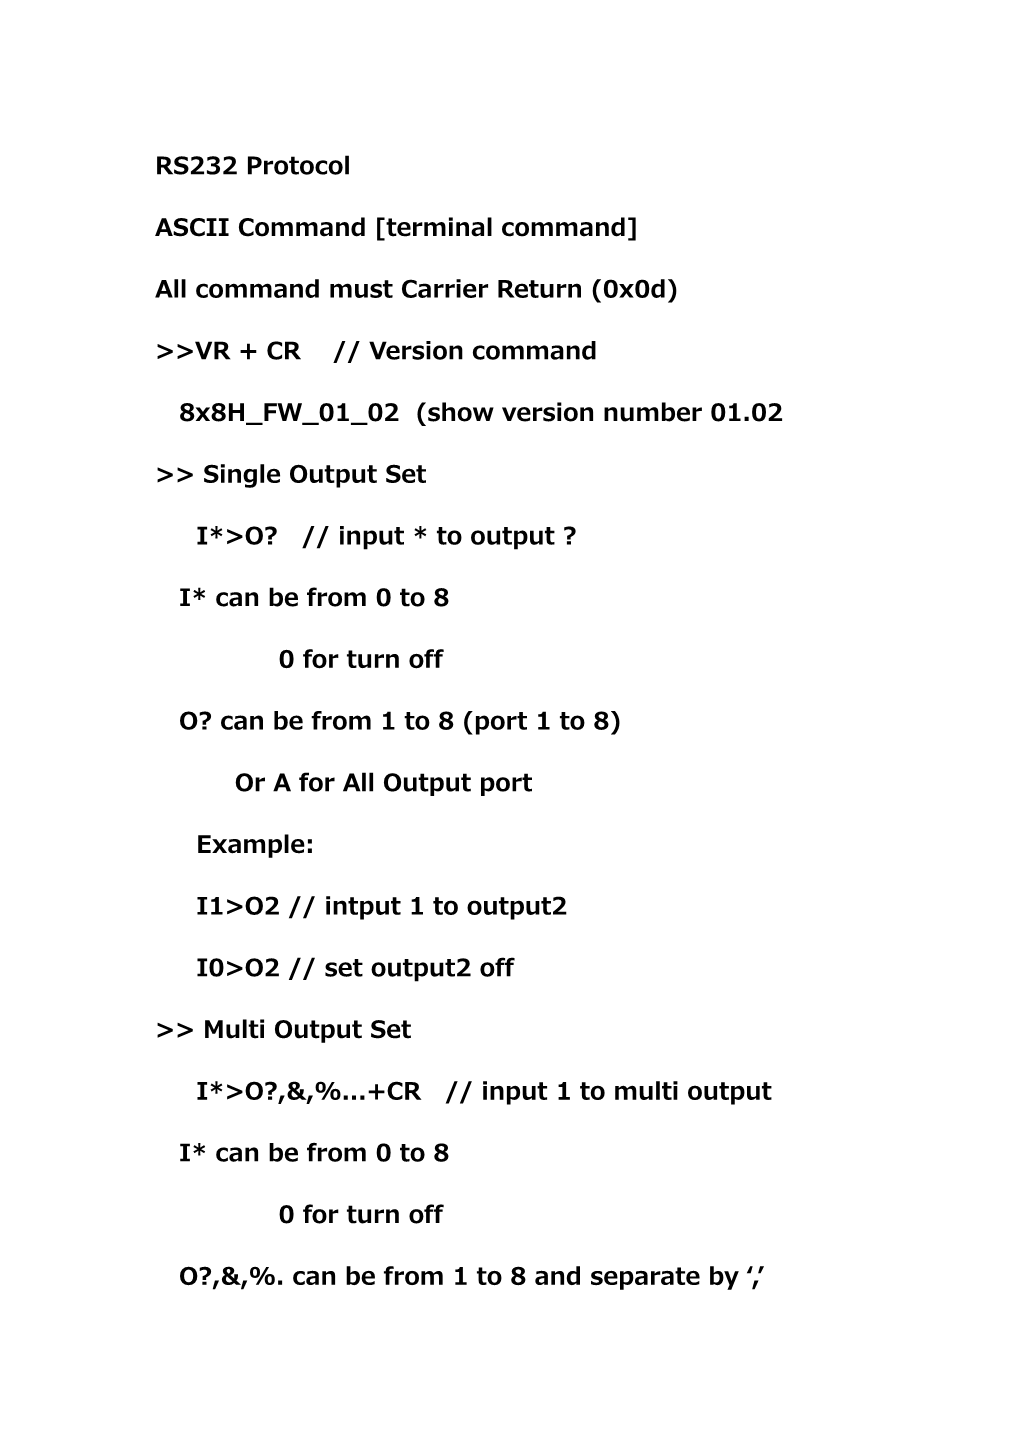 ASCII Command Terminal Command